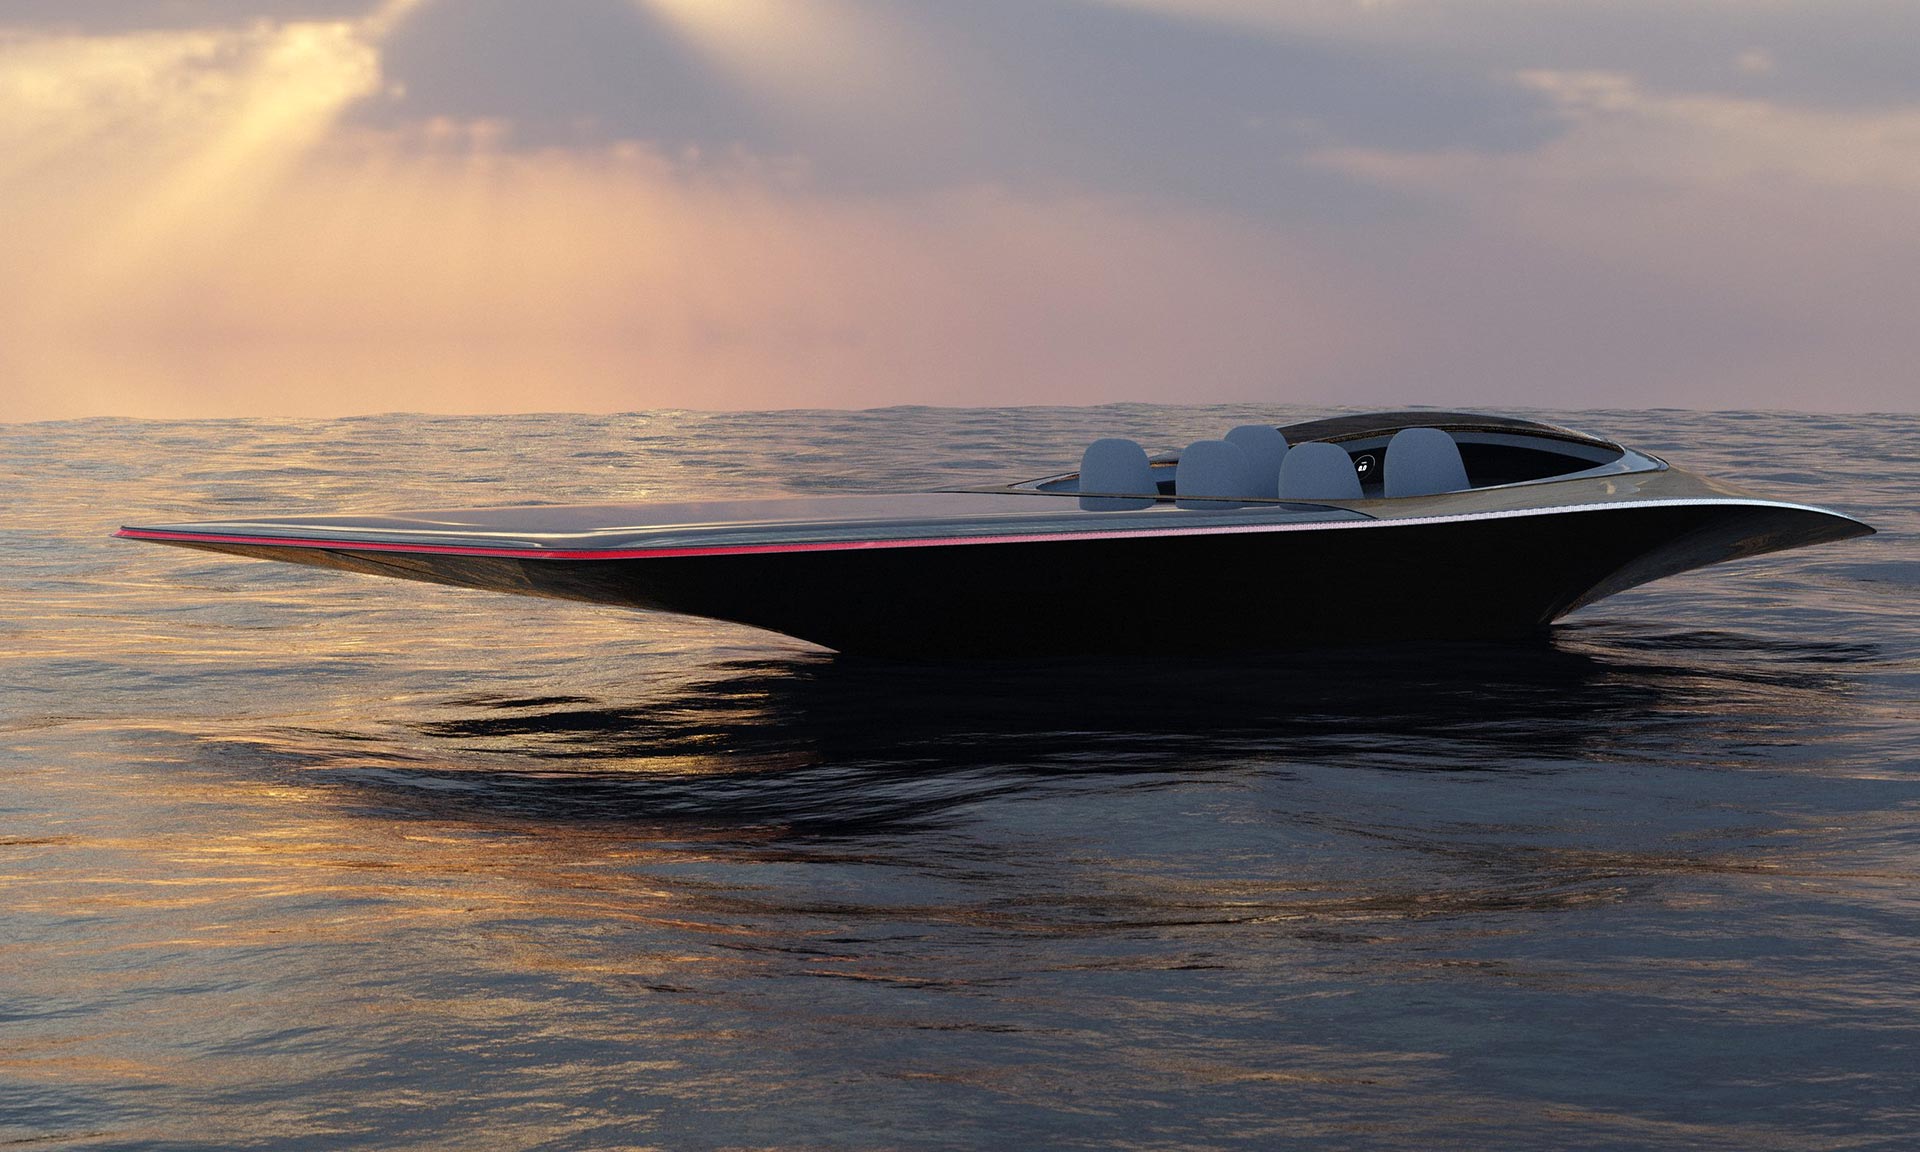 Joe Doucet navrhl ladný motorový člun Neris poháněný pouze sluneční energií